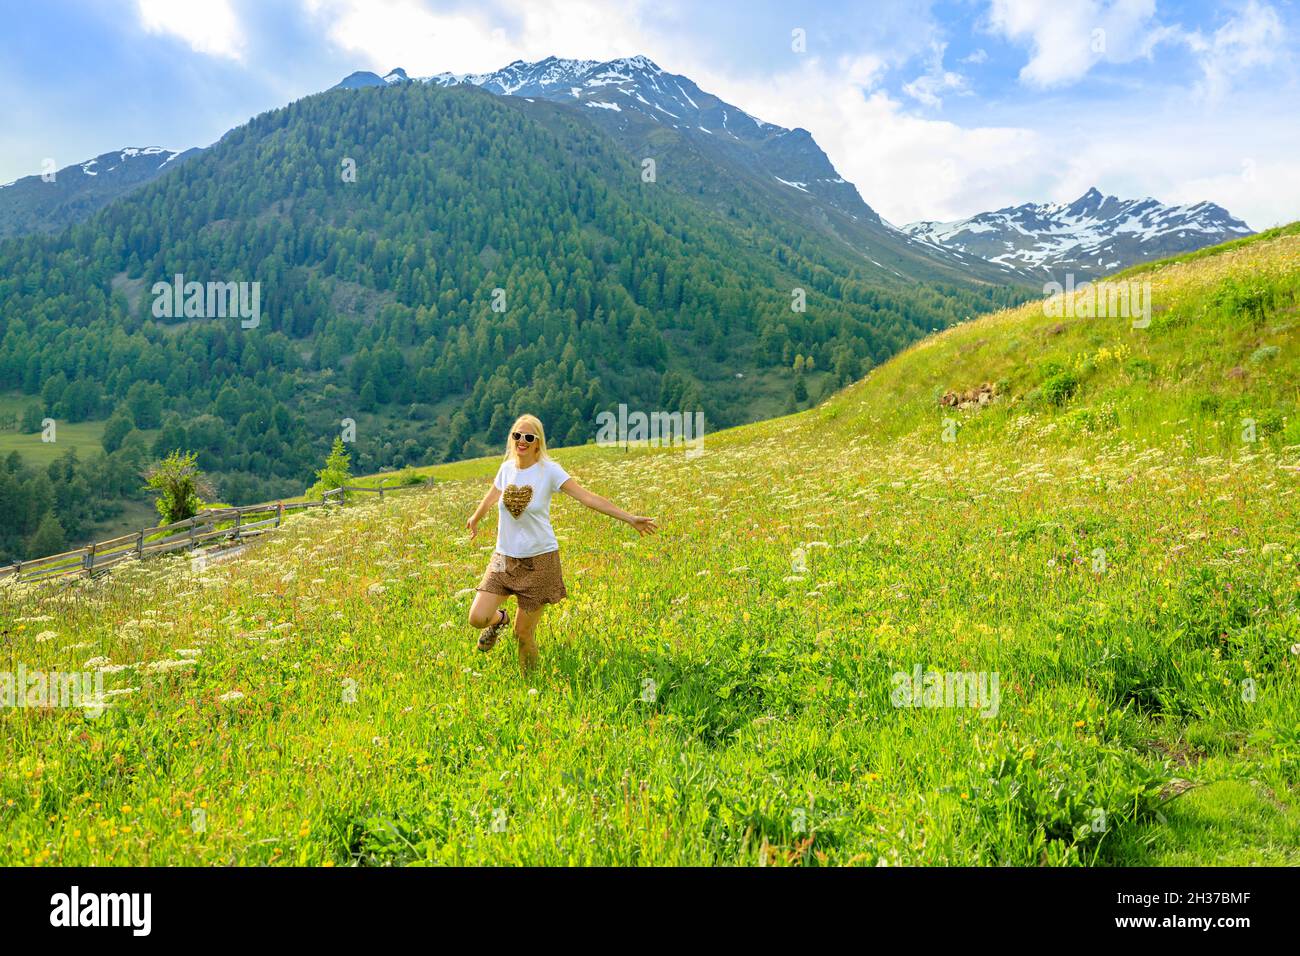 Femme insouciante heureuse avec une jupe courte dans la campagne de Guarda village de Scuol en Suisse.Ville de Guarda près de l'Auberge de la rivière de Suisse Banque D'Images